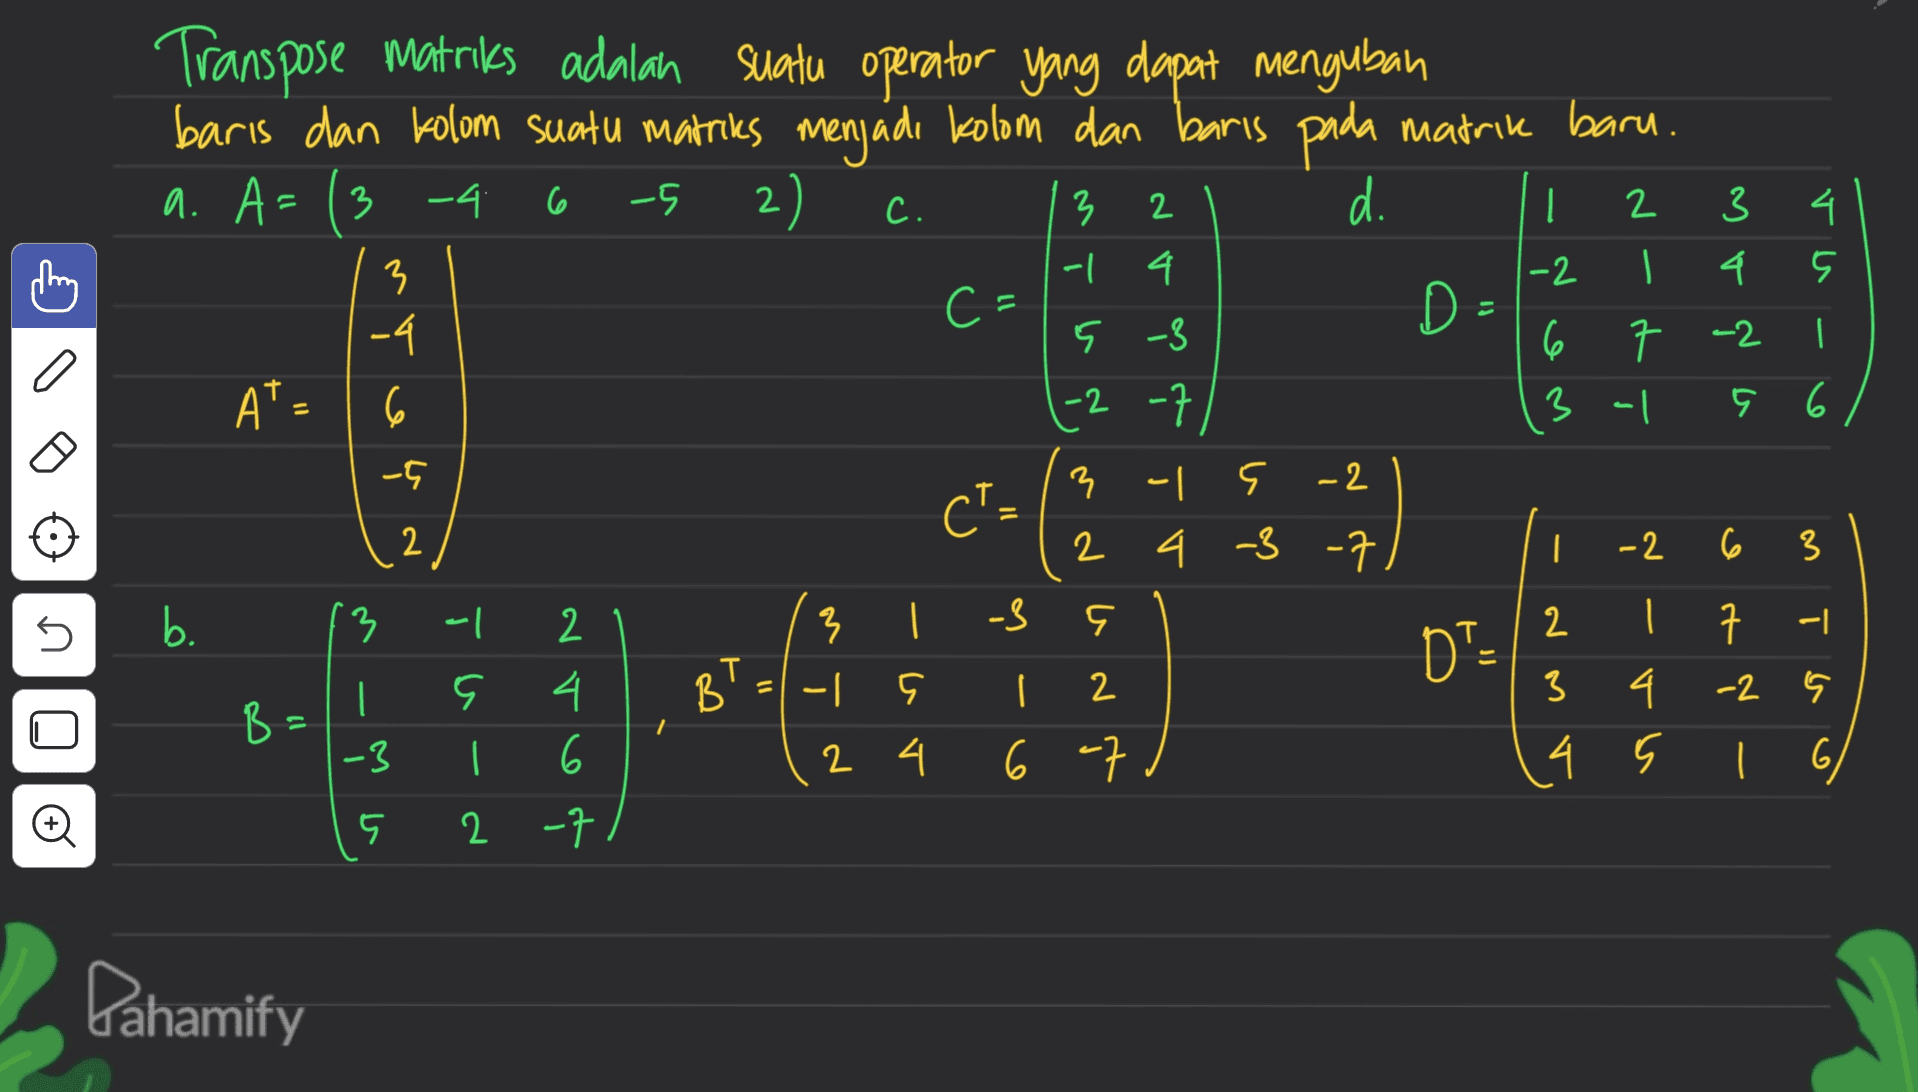 Transpose matriks adalah suatu operator yang dapat mengubah baris dan kolom suatu matriks menjadi kolom dan baris pada matrik baru. a. A= ( 3-4 2) d. D- 6 -5 C. 2 | 4 3 -1 2 3 I 4 A o 4 -2 3 -4 C- 5 -3 7 -2 6 3 al A A* - 6 11 5 6 | 6 -5 CT- 2 -2 -7 3 - F -2 2 4 -3 -7 } ? | 9 - 다 2 2 4 6 -7 5 b. 13 7 -3 DTE -2 6 3 2 | 7 -| 3 4. -2 4 s i 6 | BT B | 2 4 6 2 -7 12 -3 5 Dahamify 